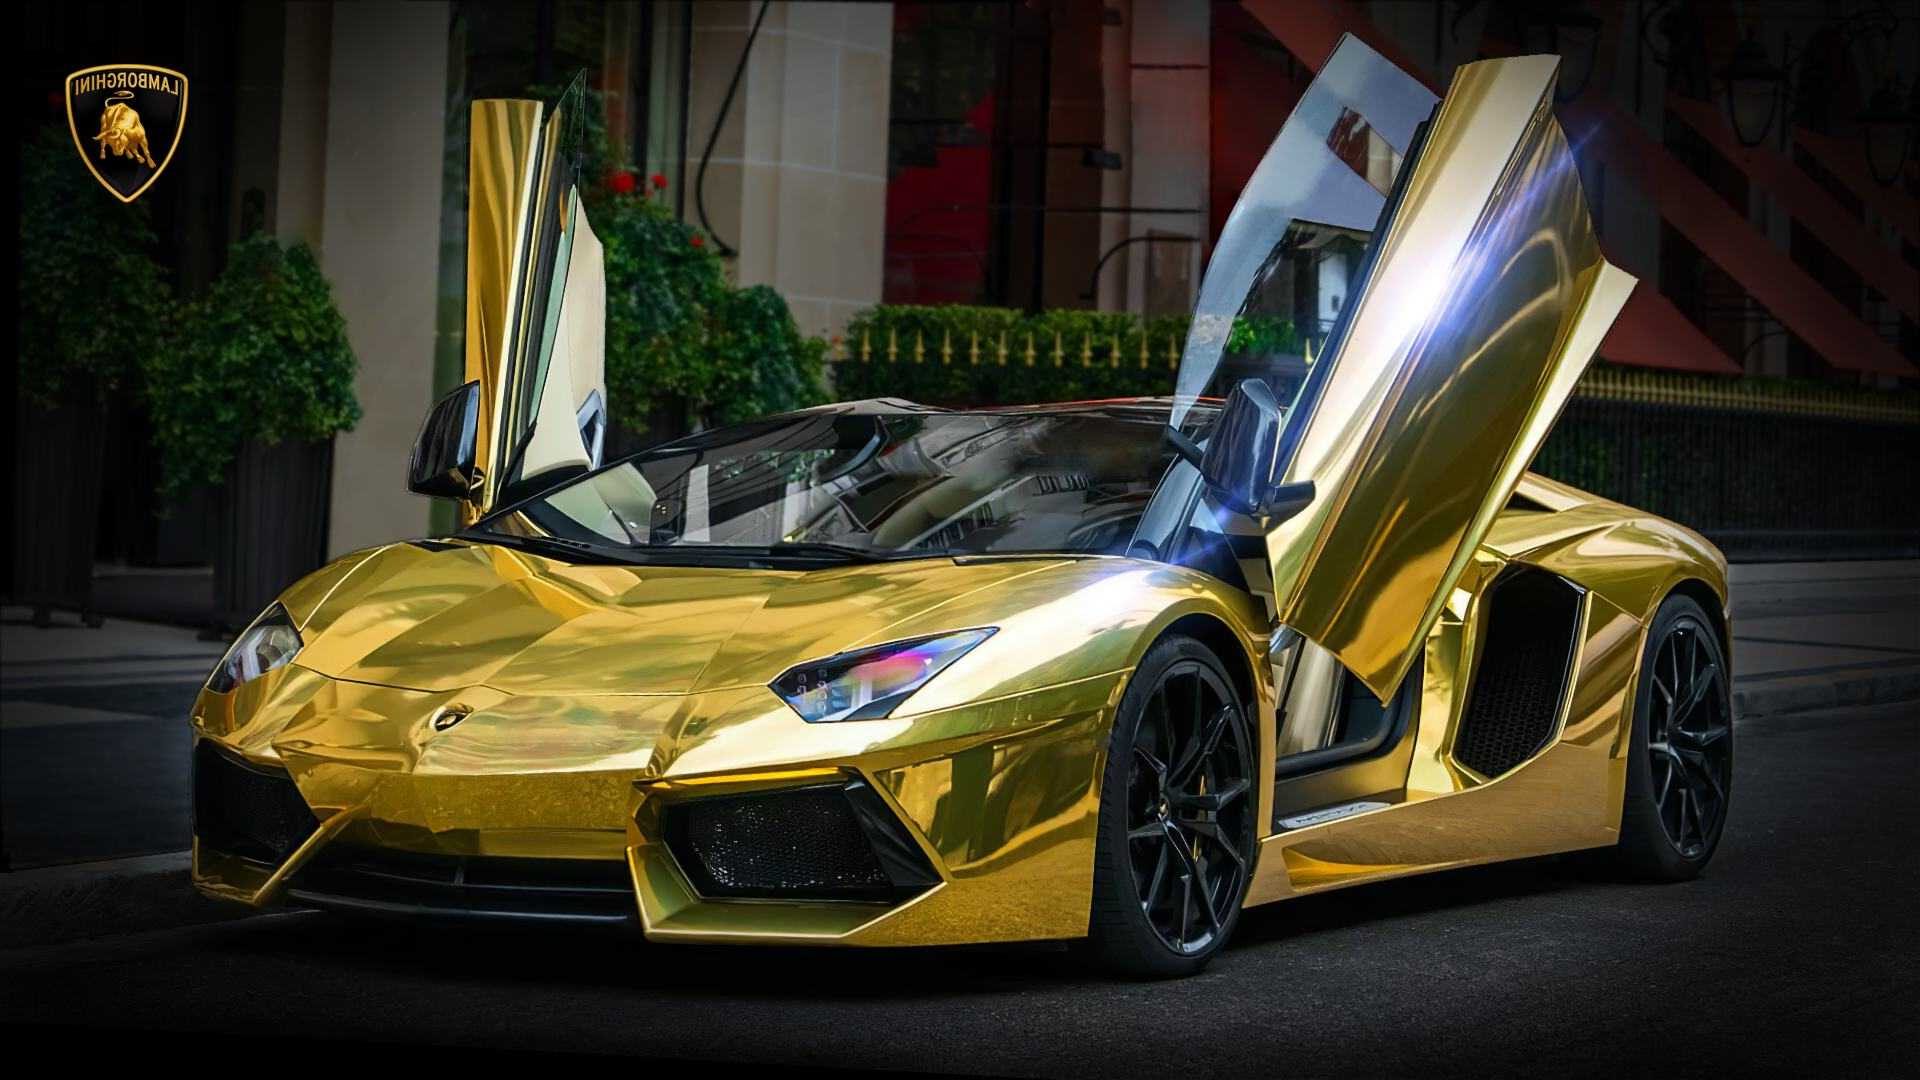 Lamborghini Wallpaper - NawPic